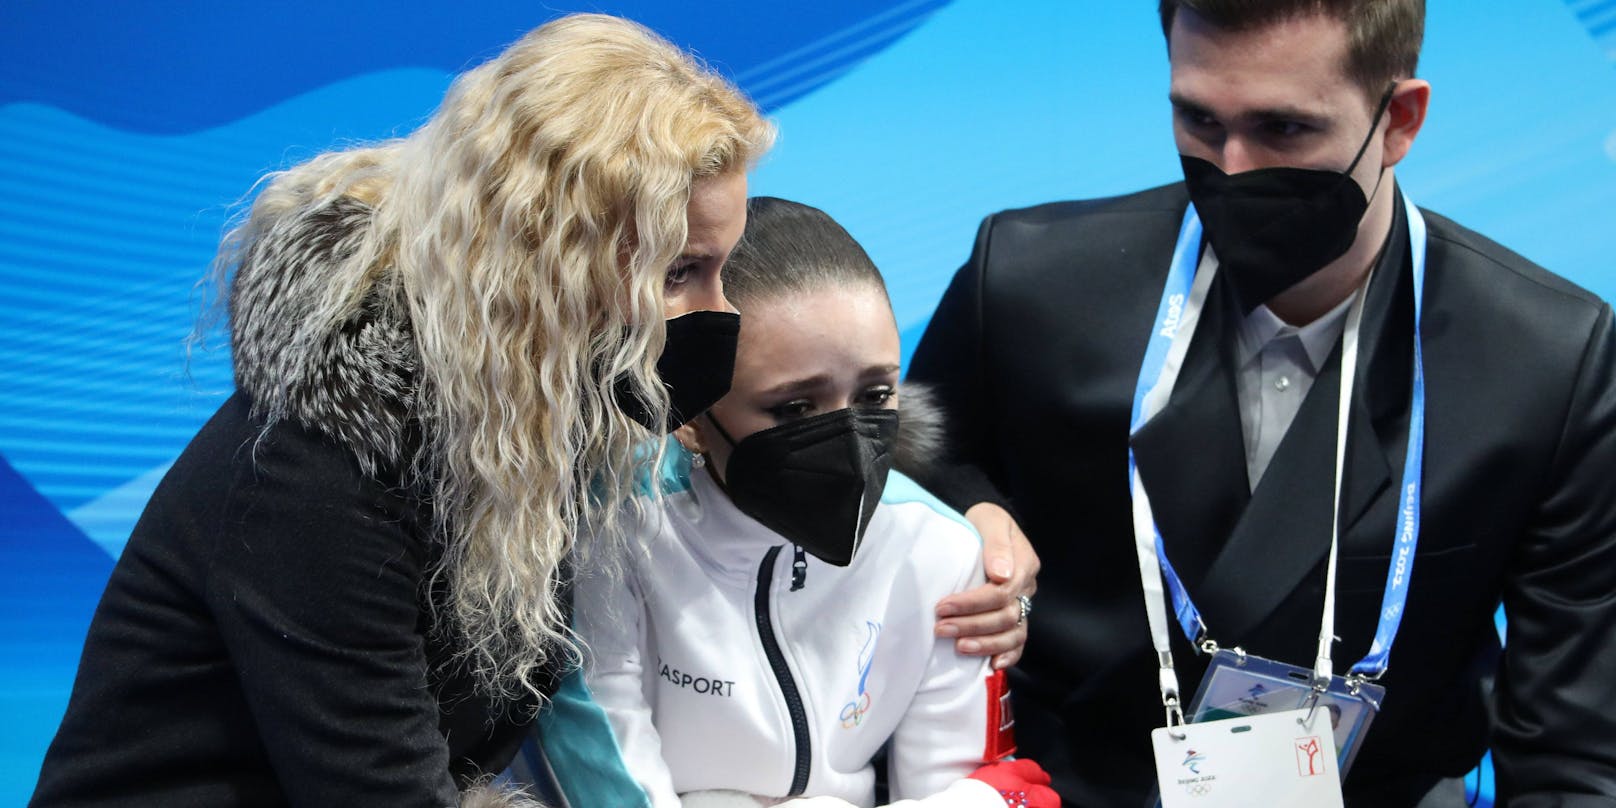 Walijewa vergießt Tränen, ihre Trainerin tröstet sie.